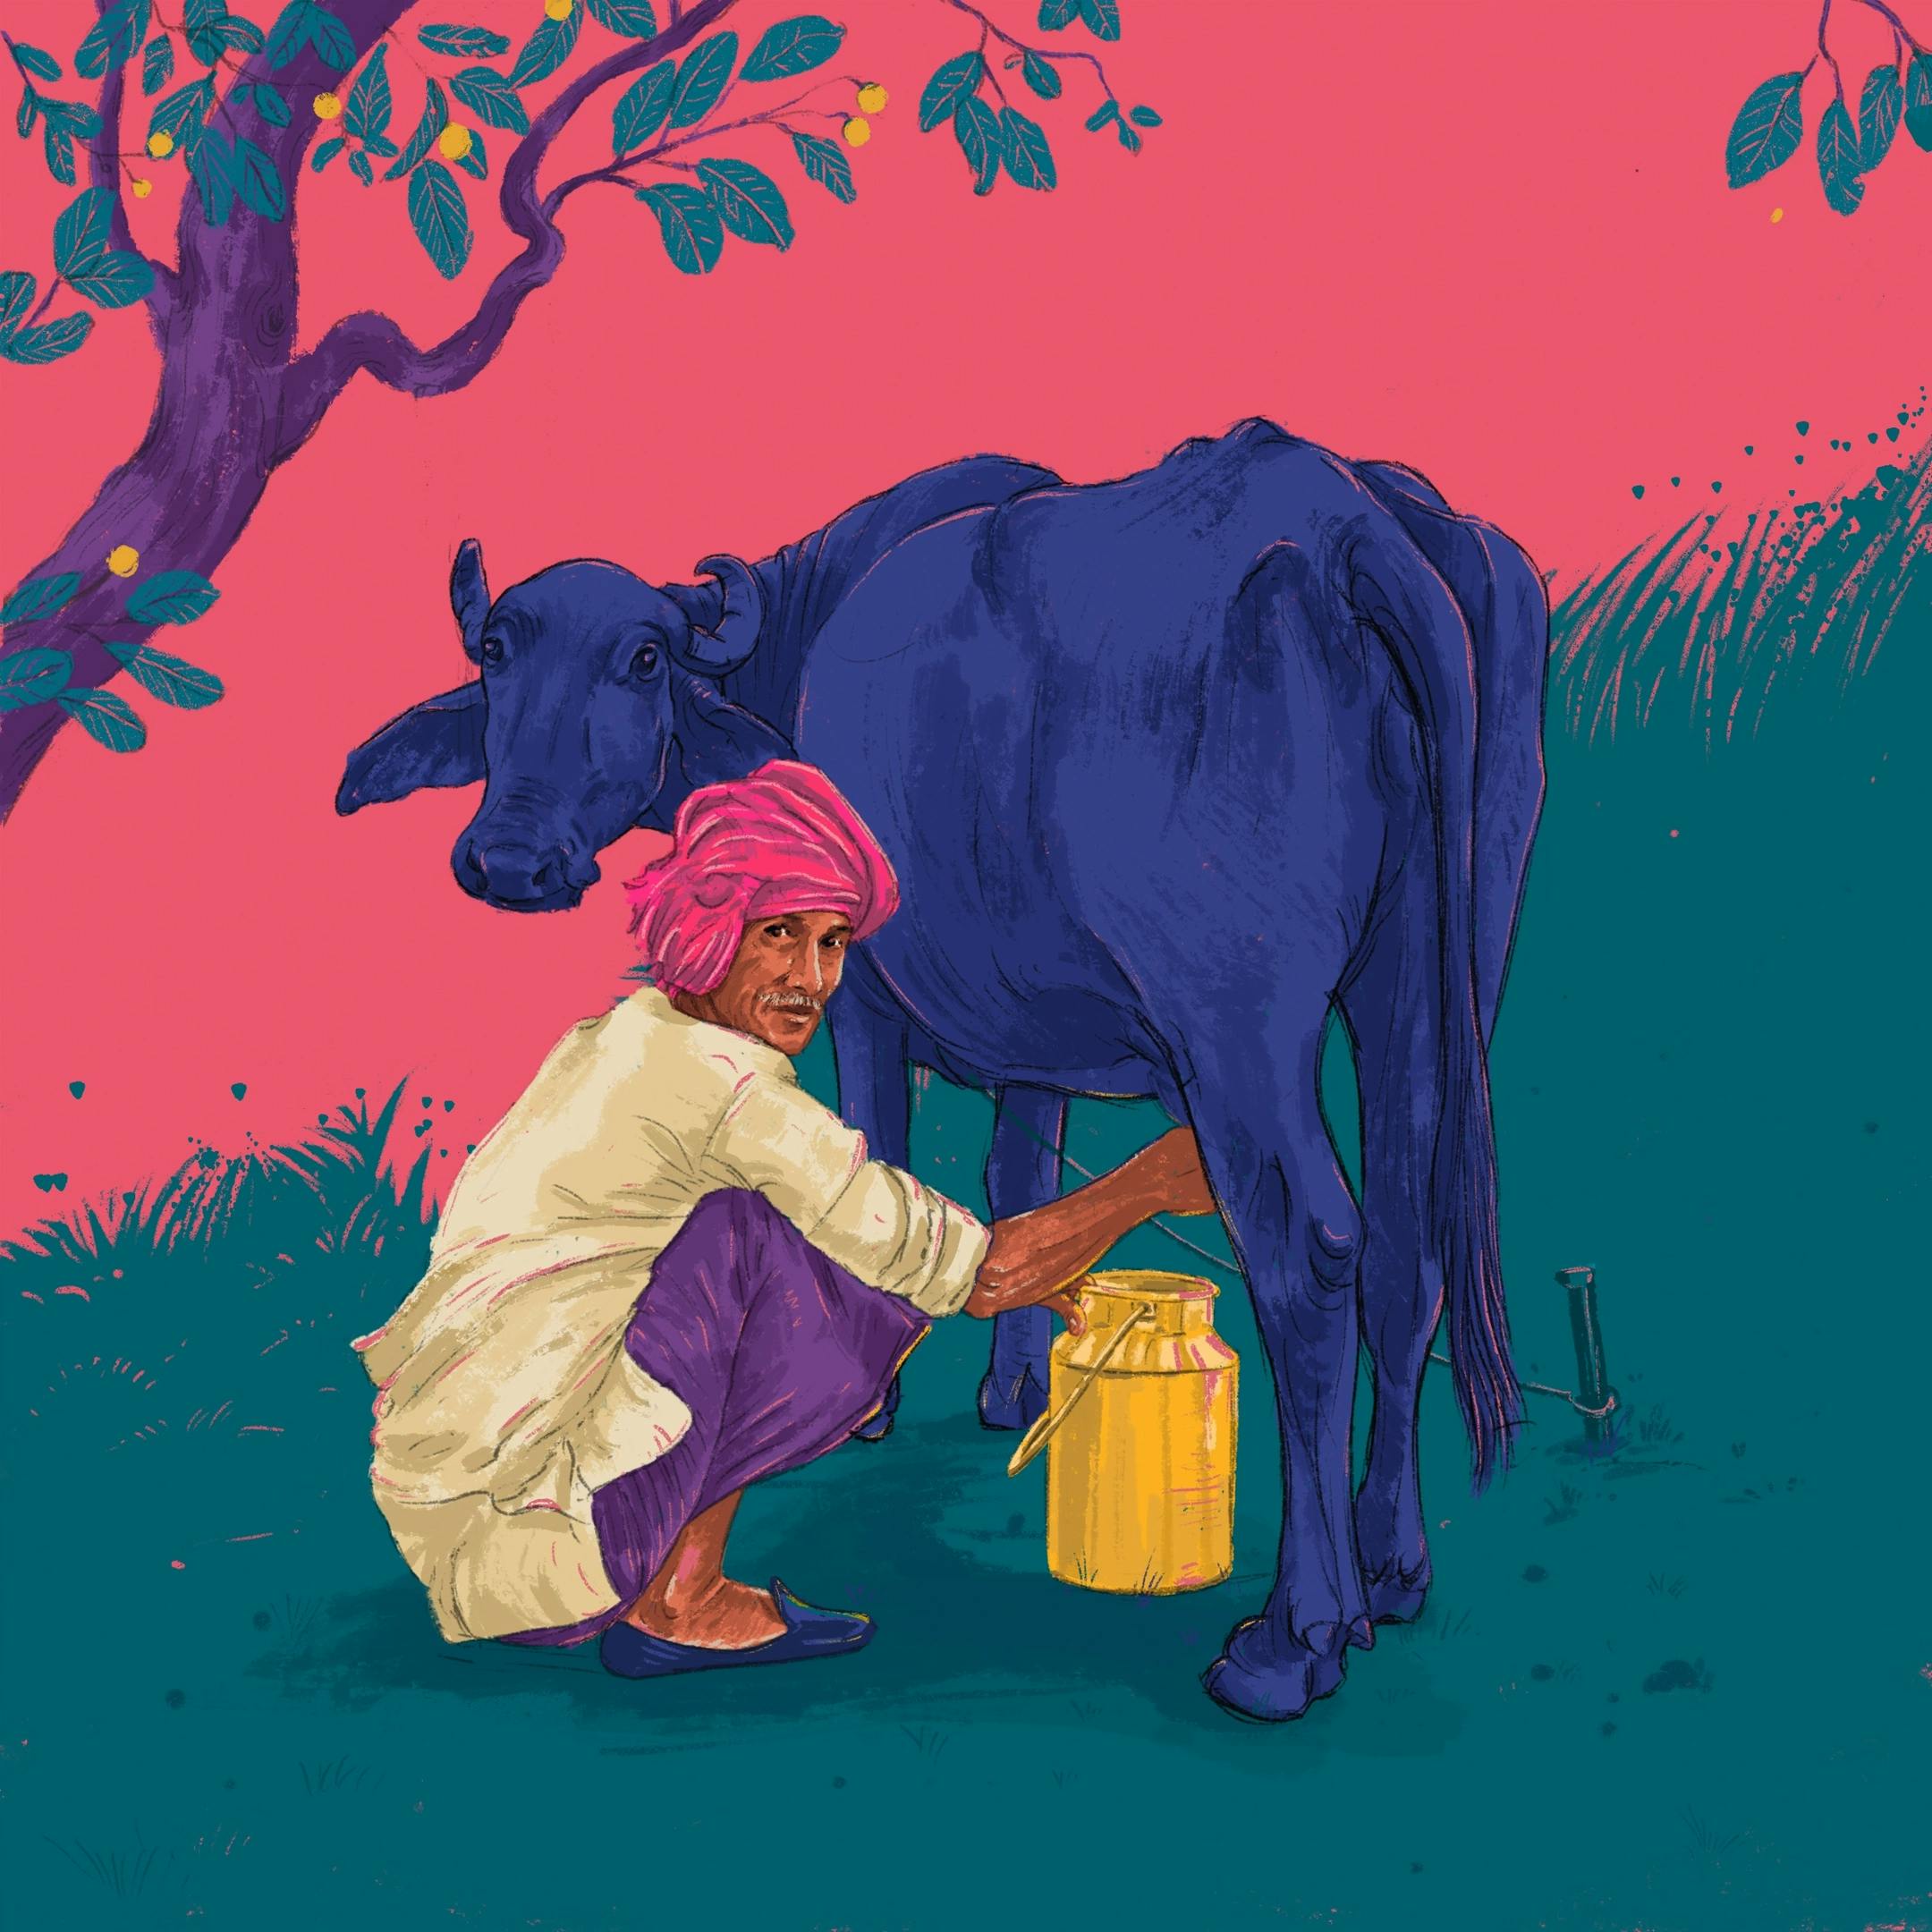 A man milking a cow